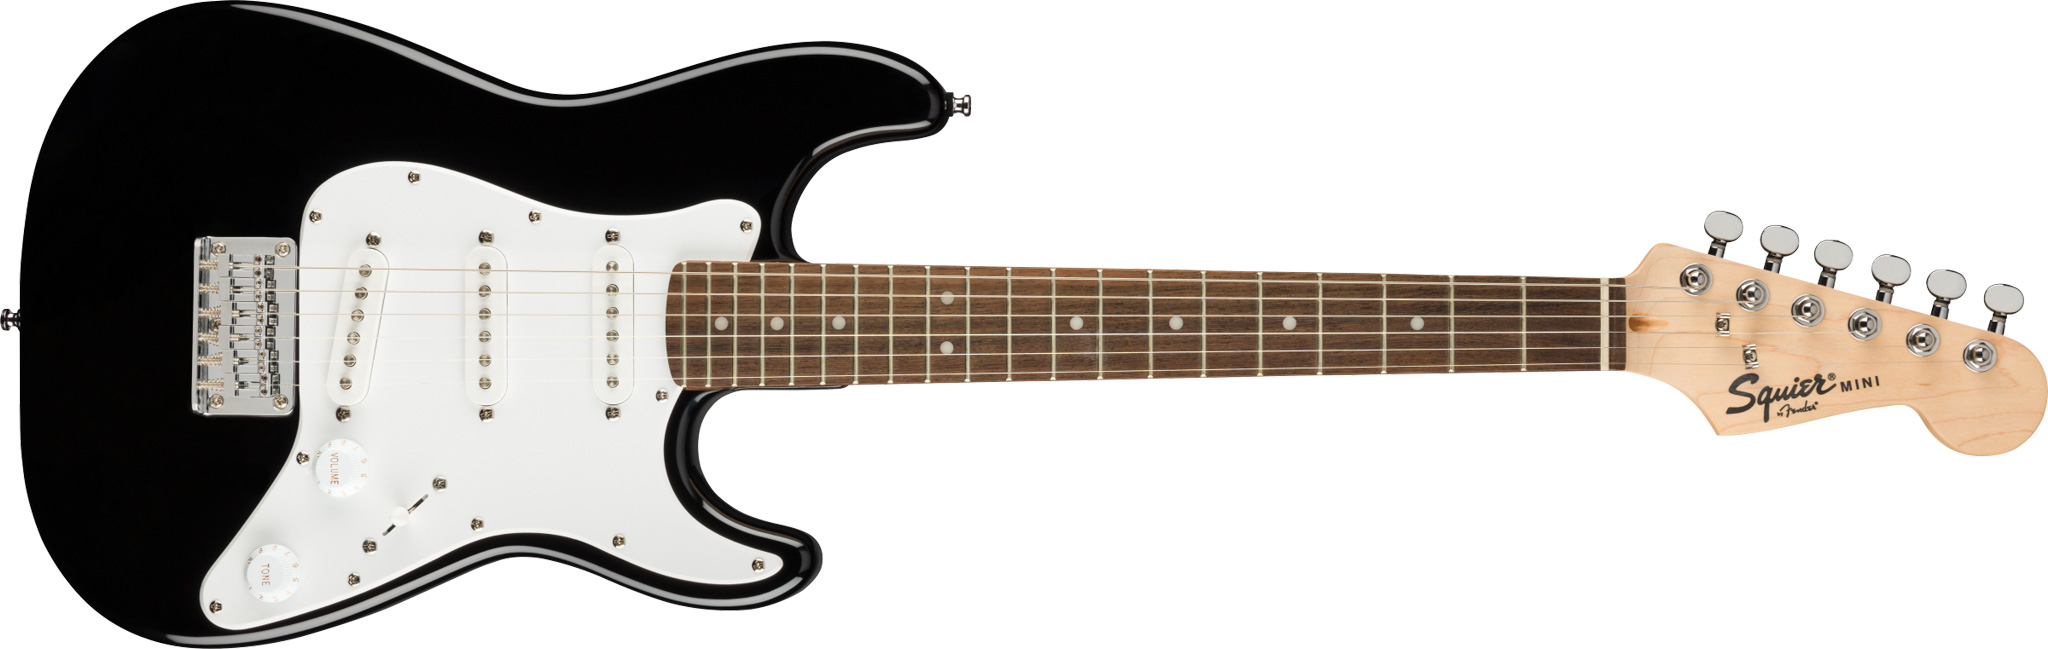 Billede af Fender Squier Mini Stratocaster El-guitar (Sort)